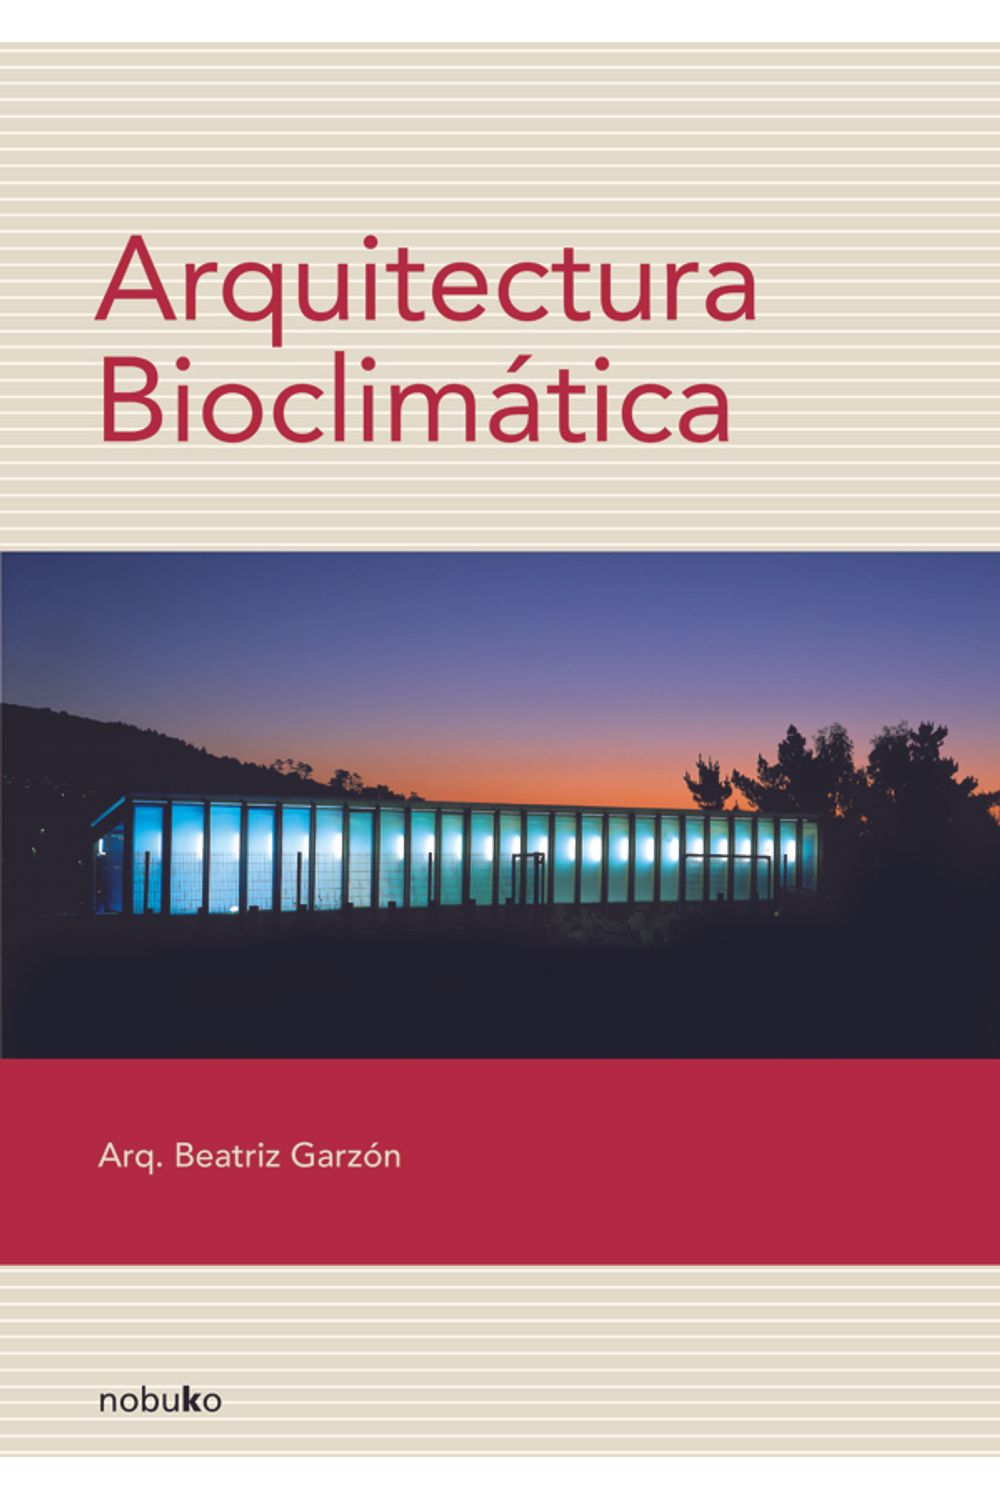 bm-arquitectura-bioclimatica-nobukodiseno-editorial-9789875840966